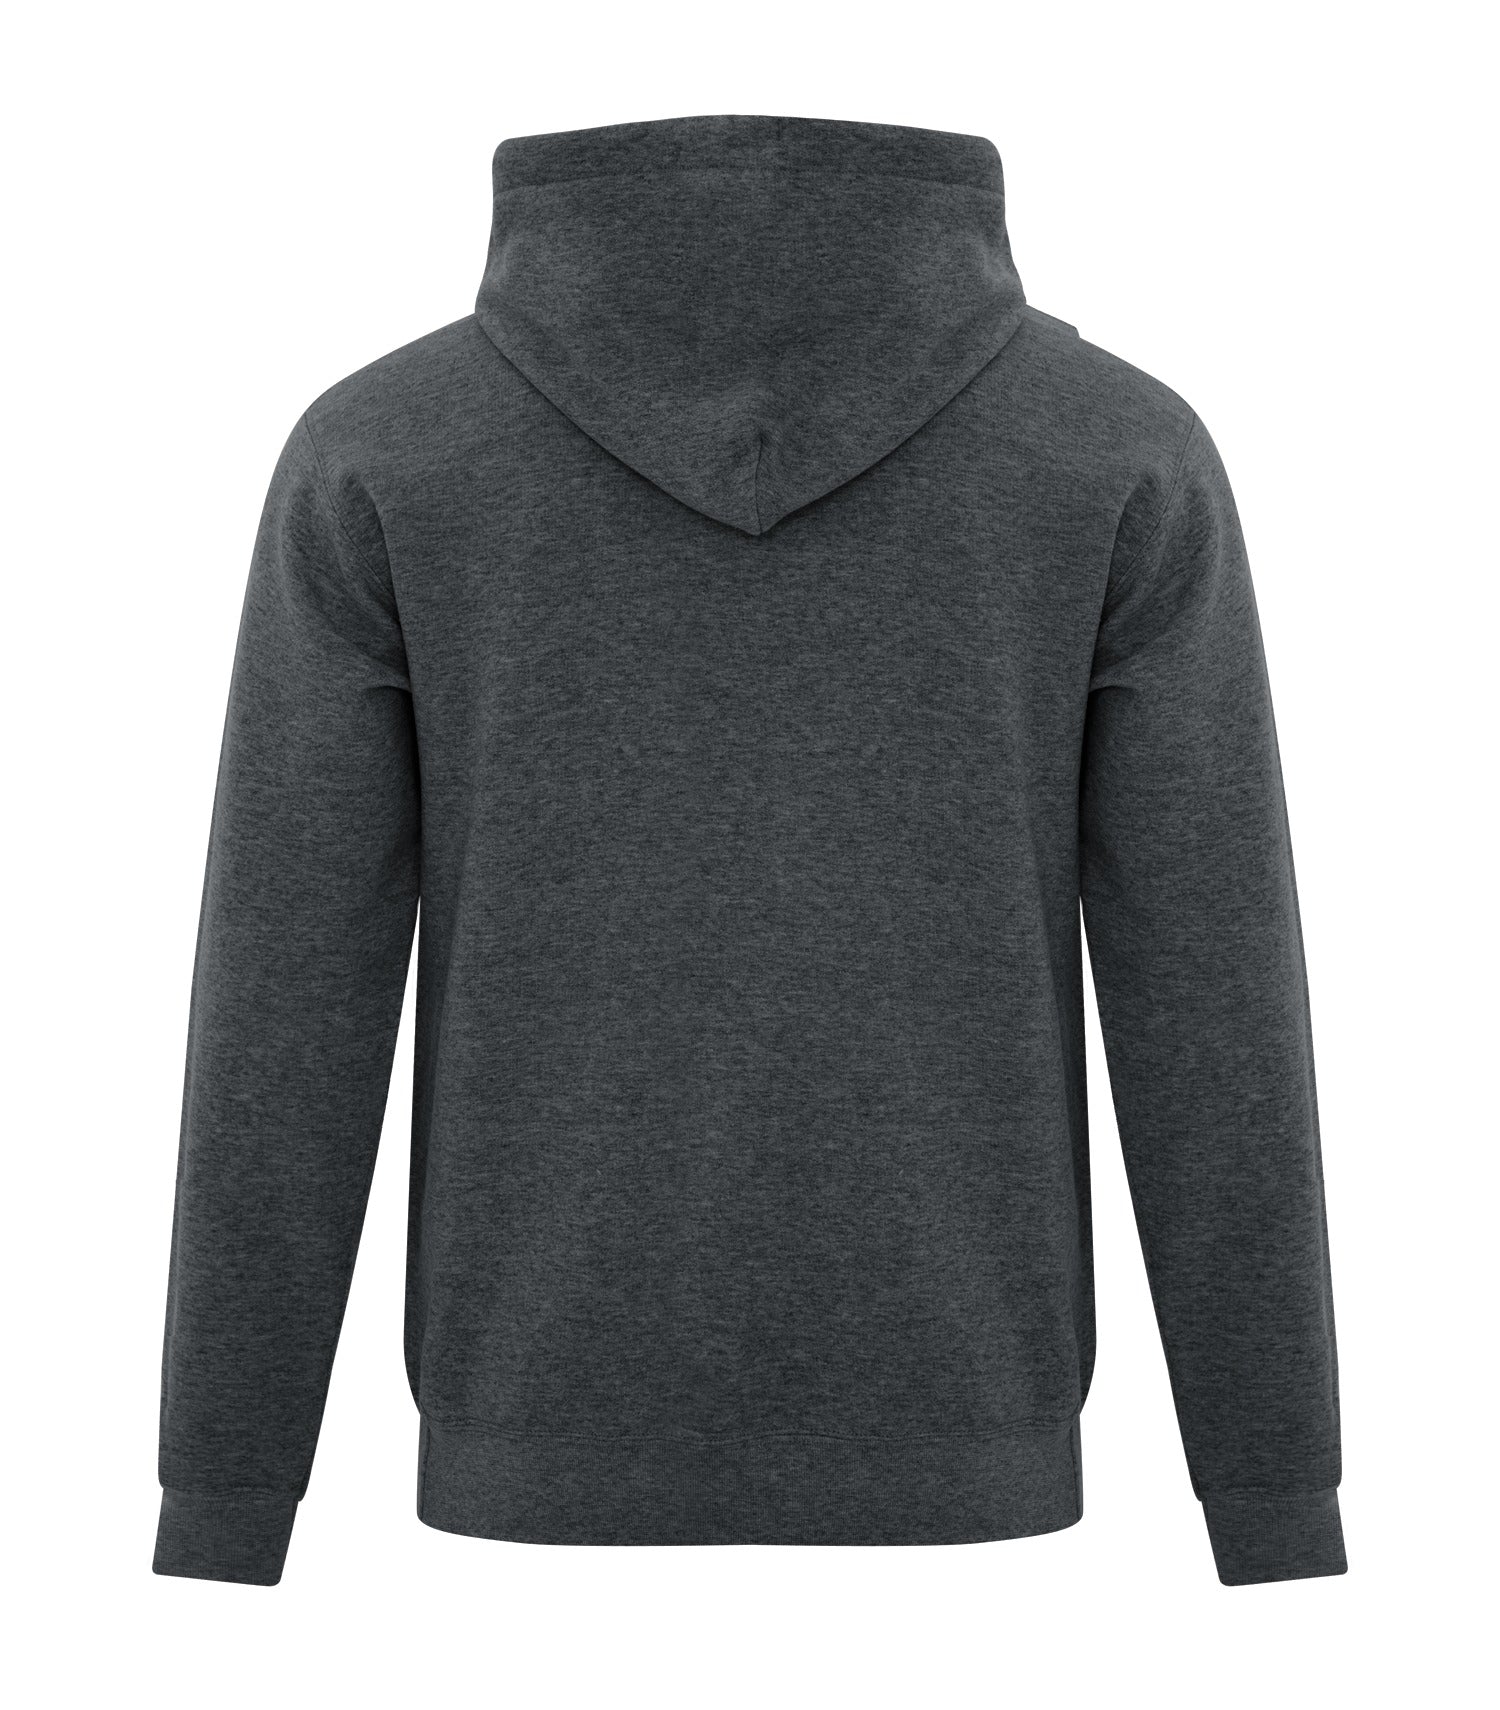 ATC Everyday Fleece Full-Zip Hooded Sweatshirt